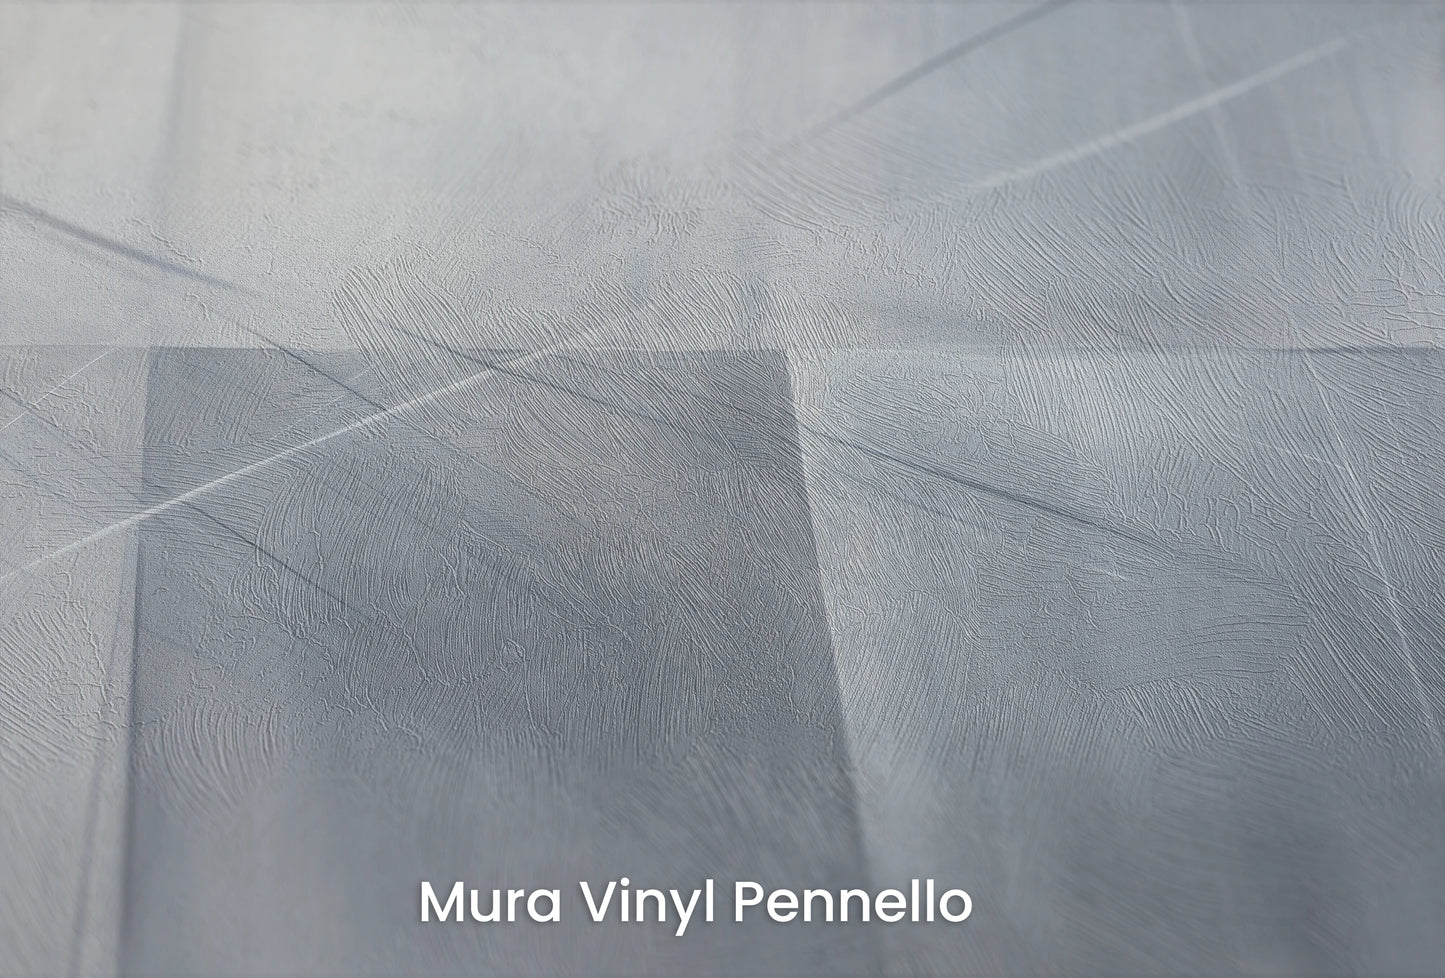 Zbliżenie na artystyczną fototapetę o nazwie Urban Scape na podłożu Mura Vinyl Pennello - faktura pociągnięć pędzla malarskiego.